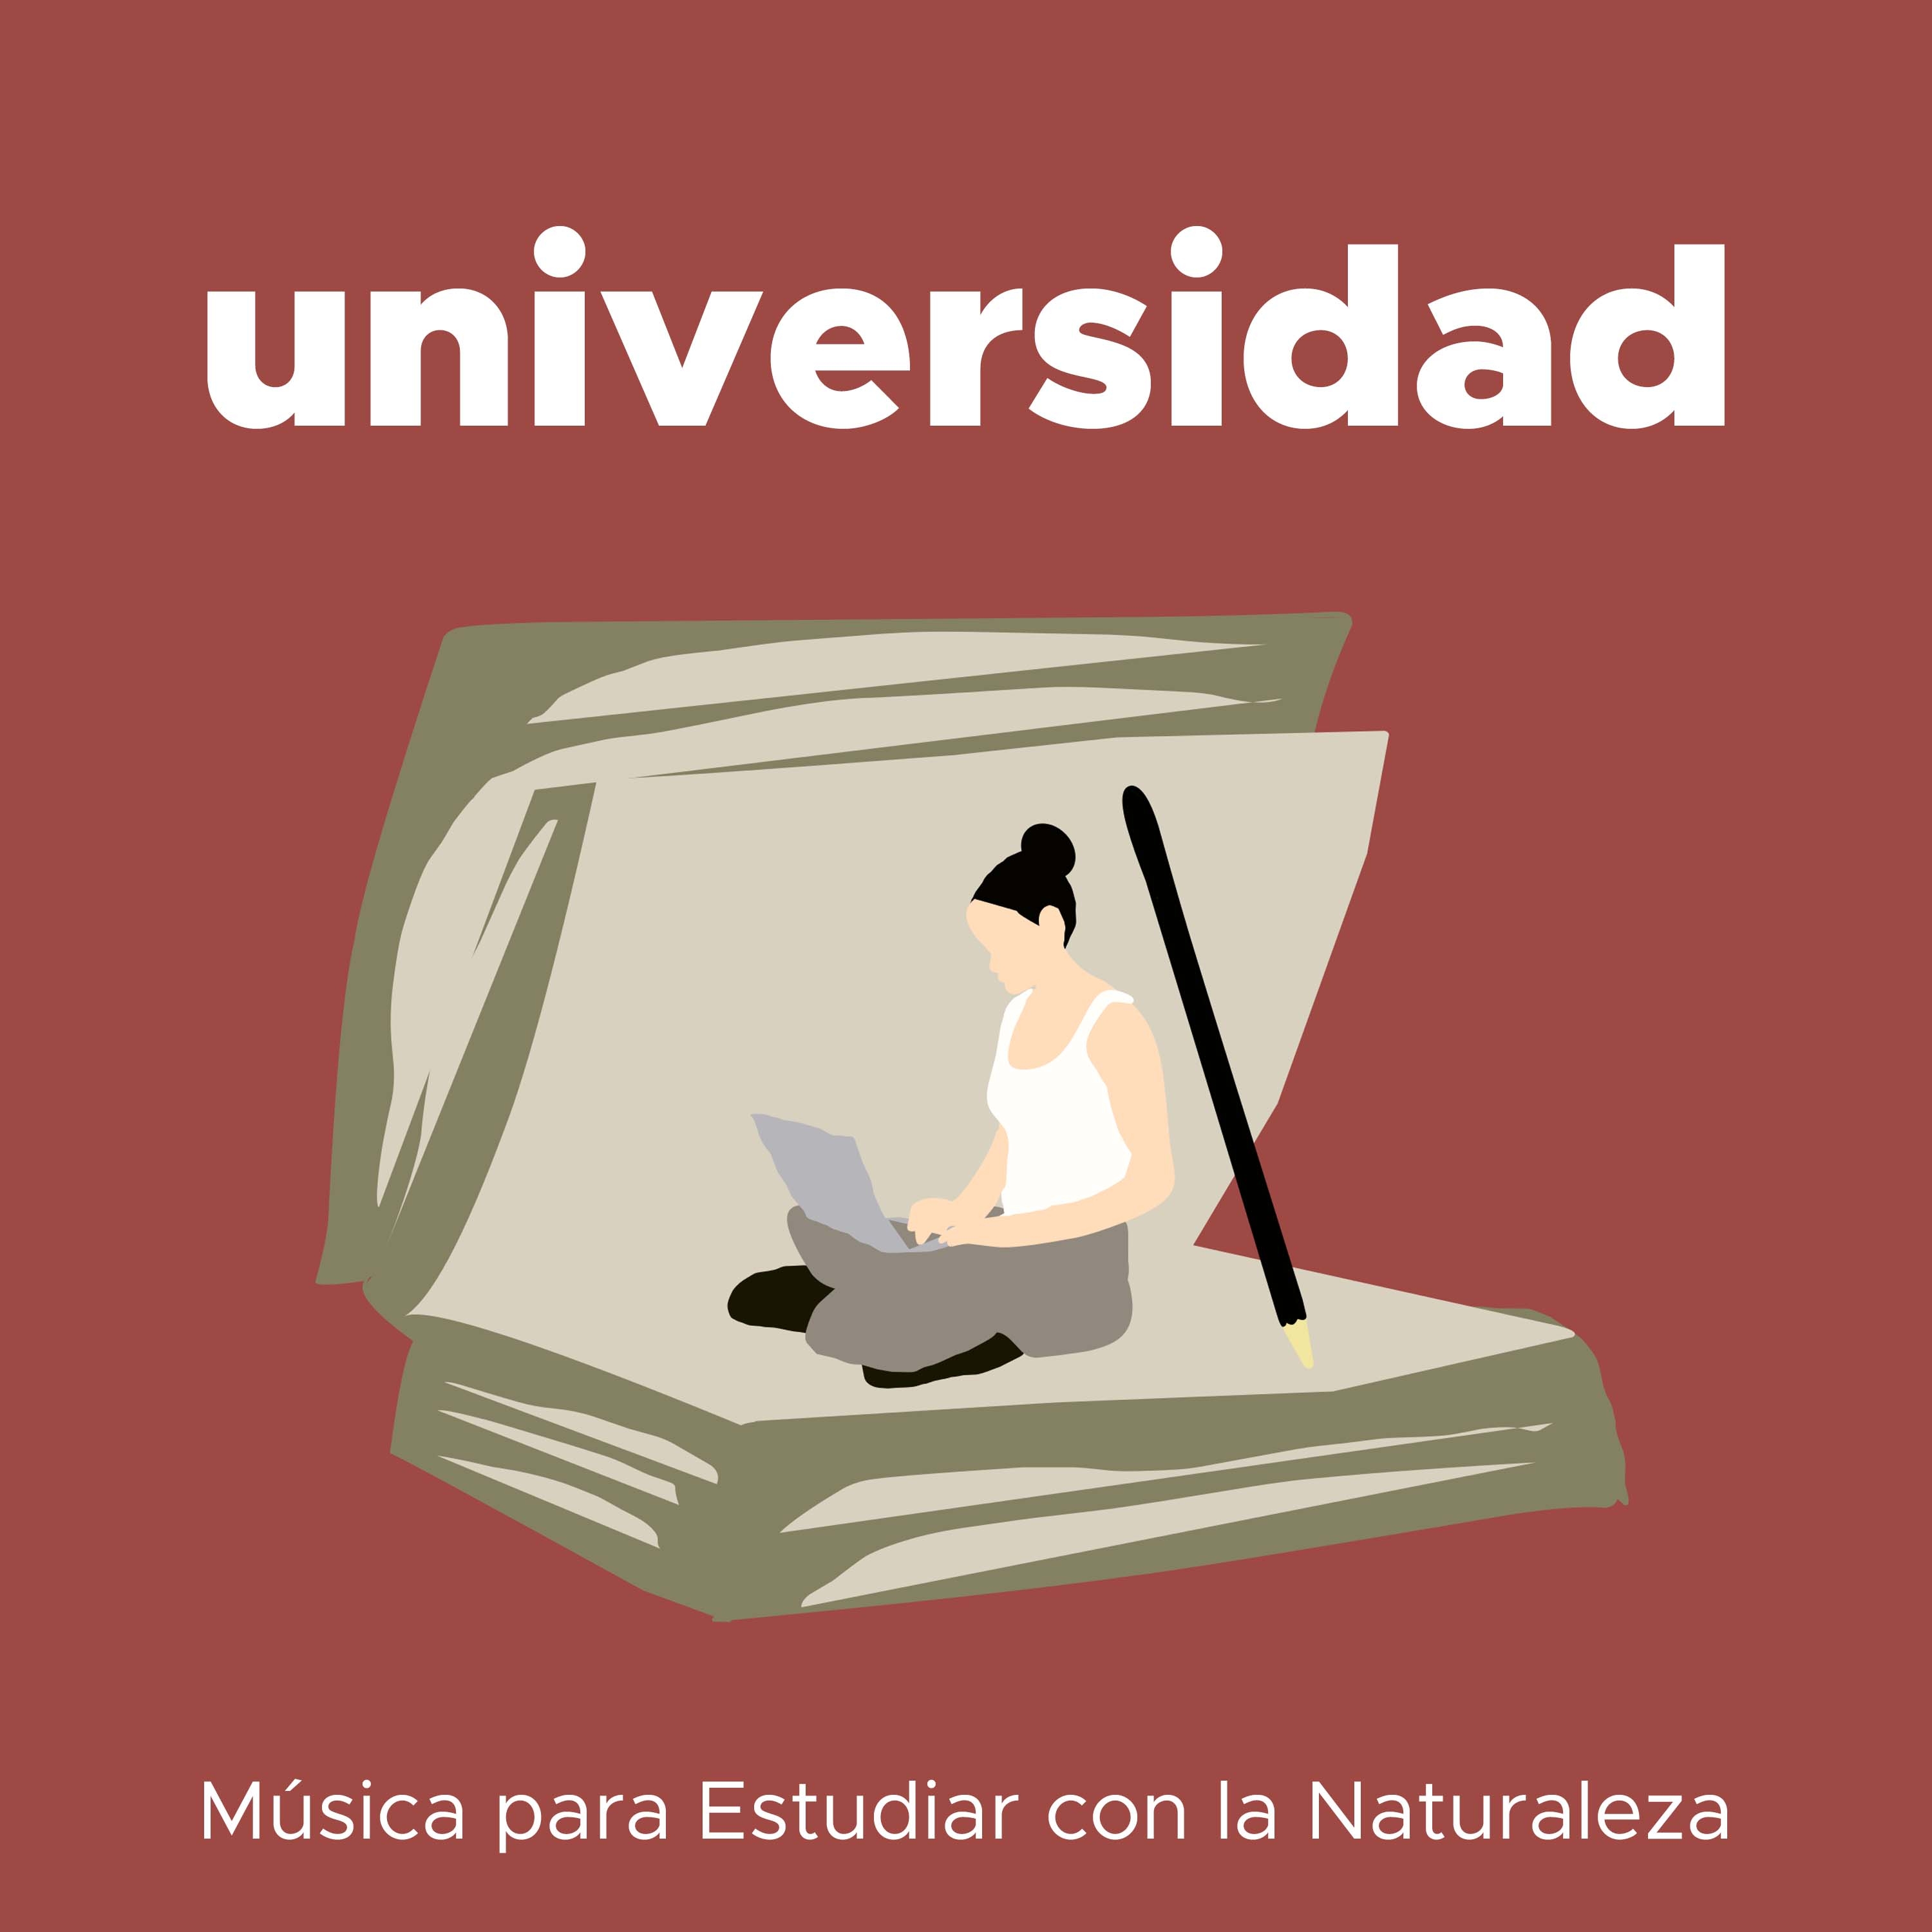 Universidad  Musica para Estudiar con la Naturaleza para Mejorar la Concentracio n y la Relacio n Profunda